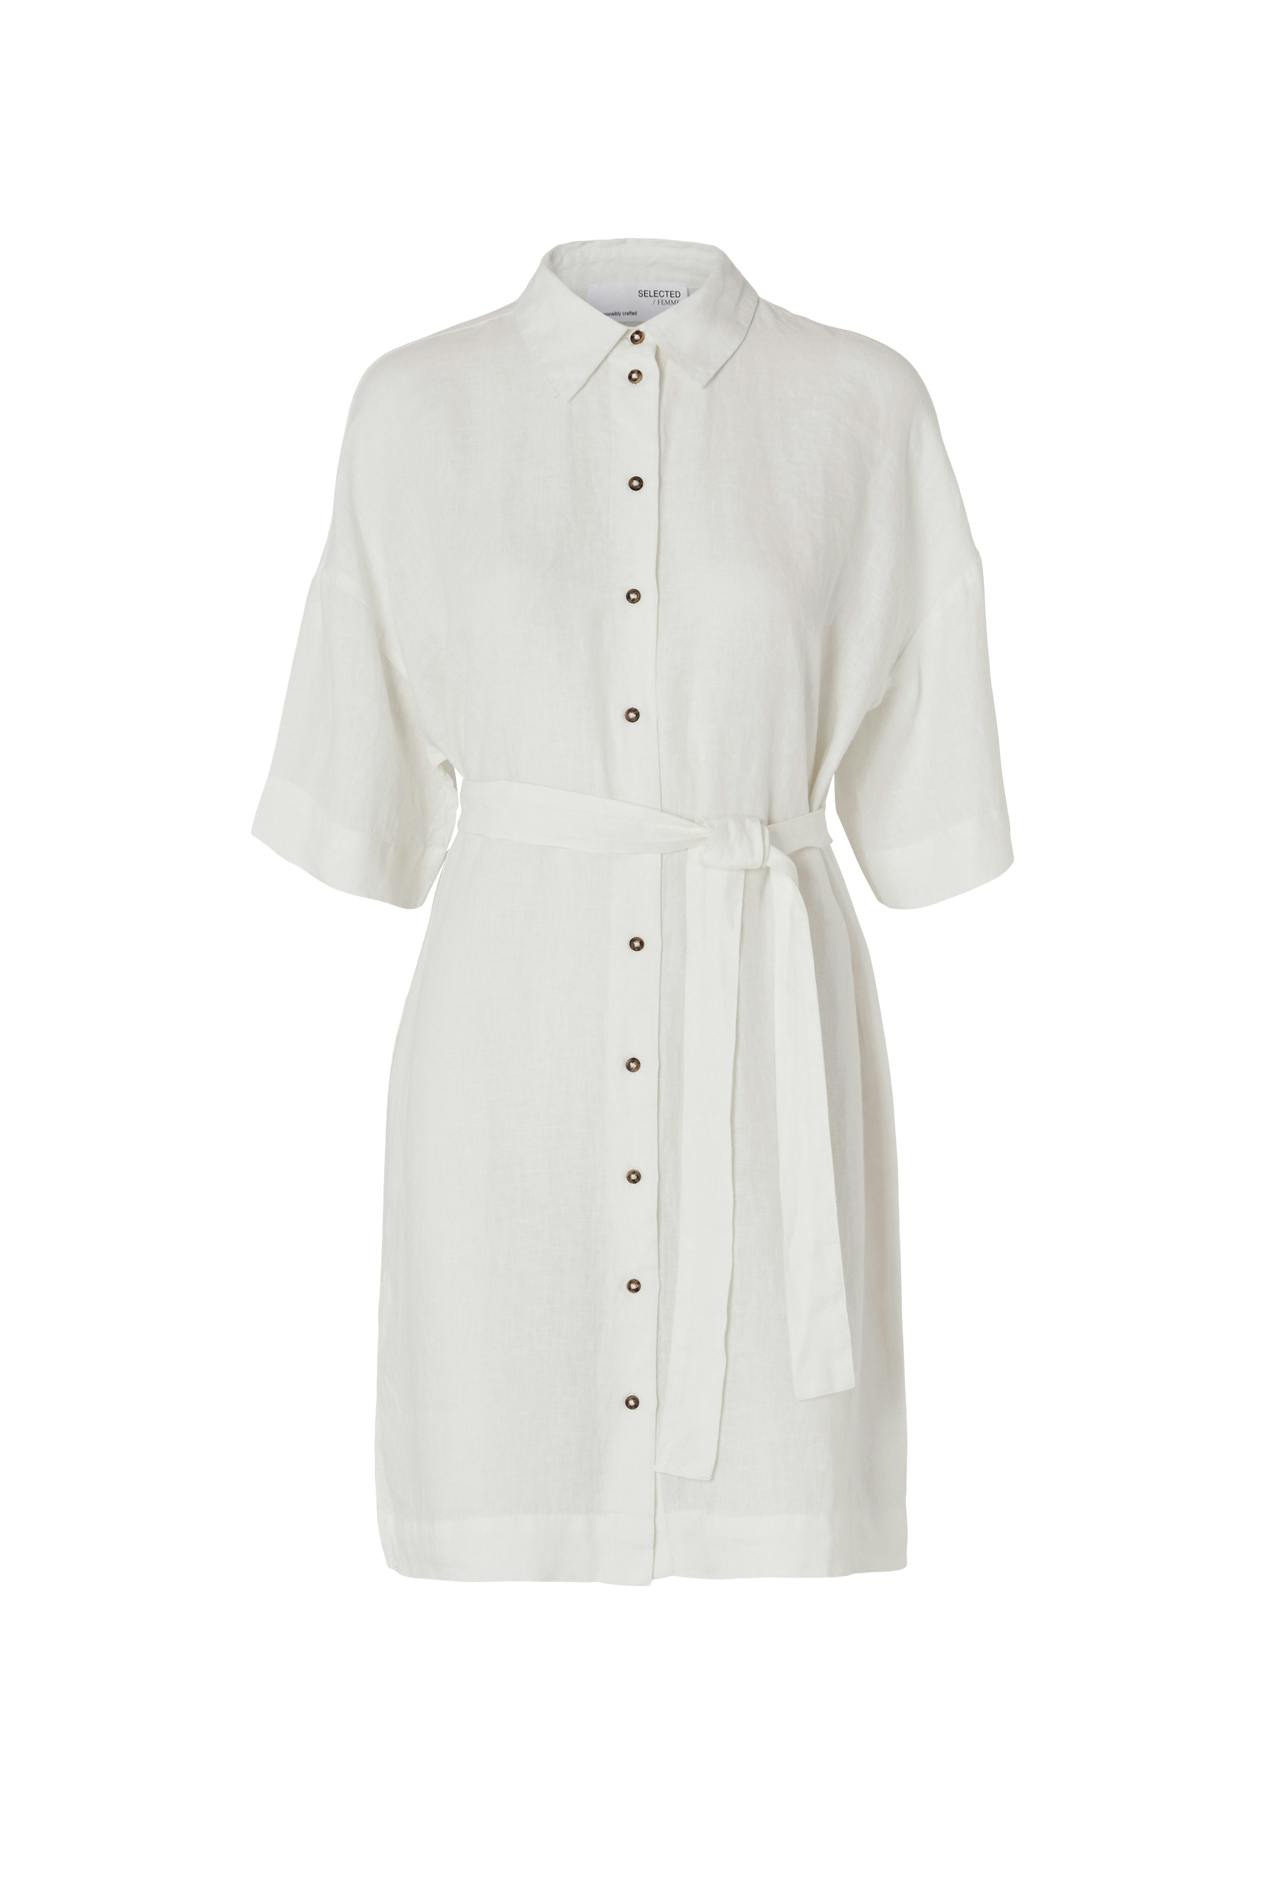 Linnie 2/4 short linen shirt dress